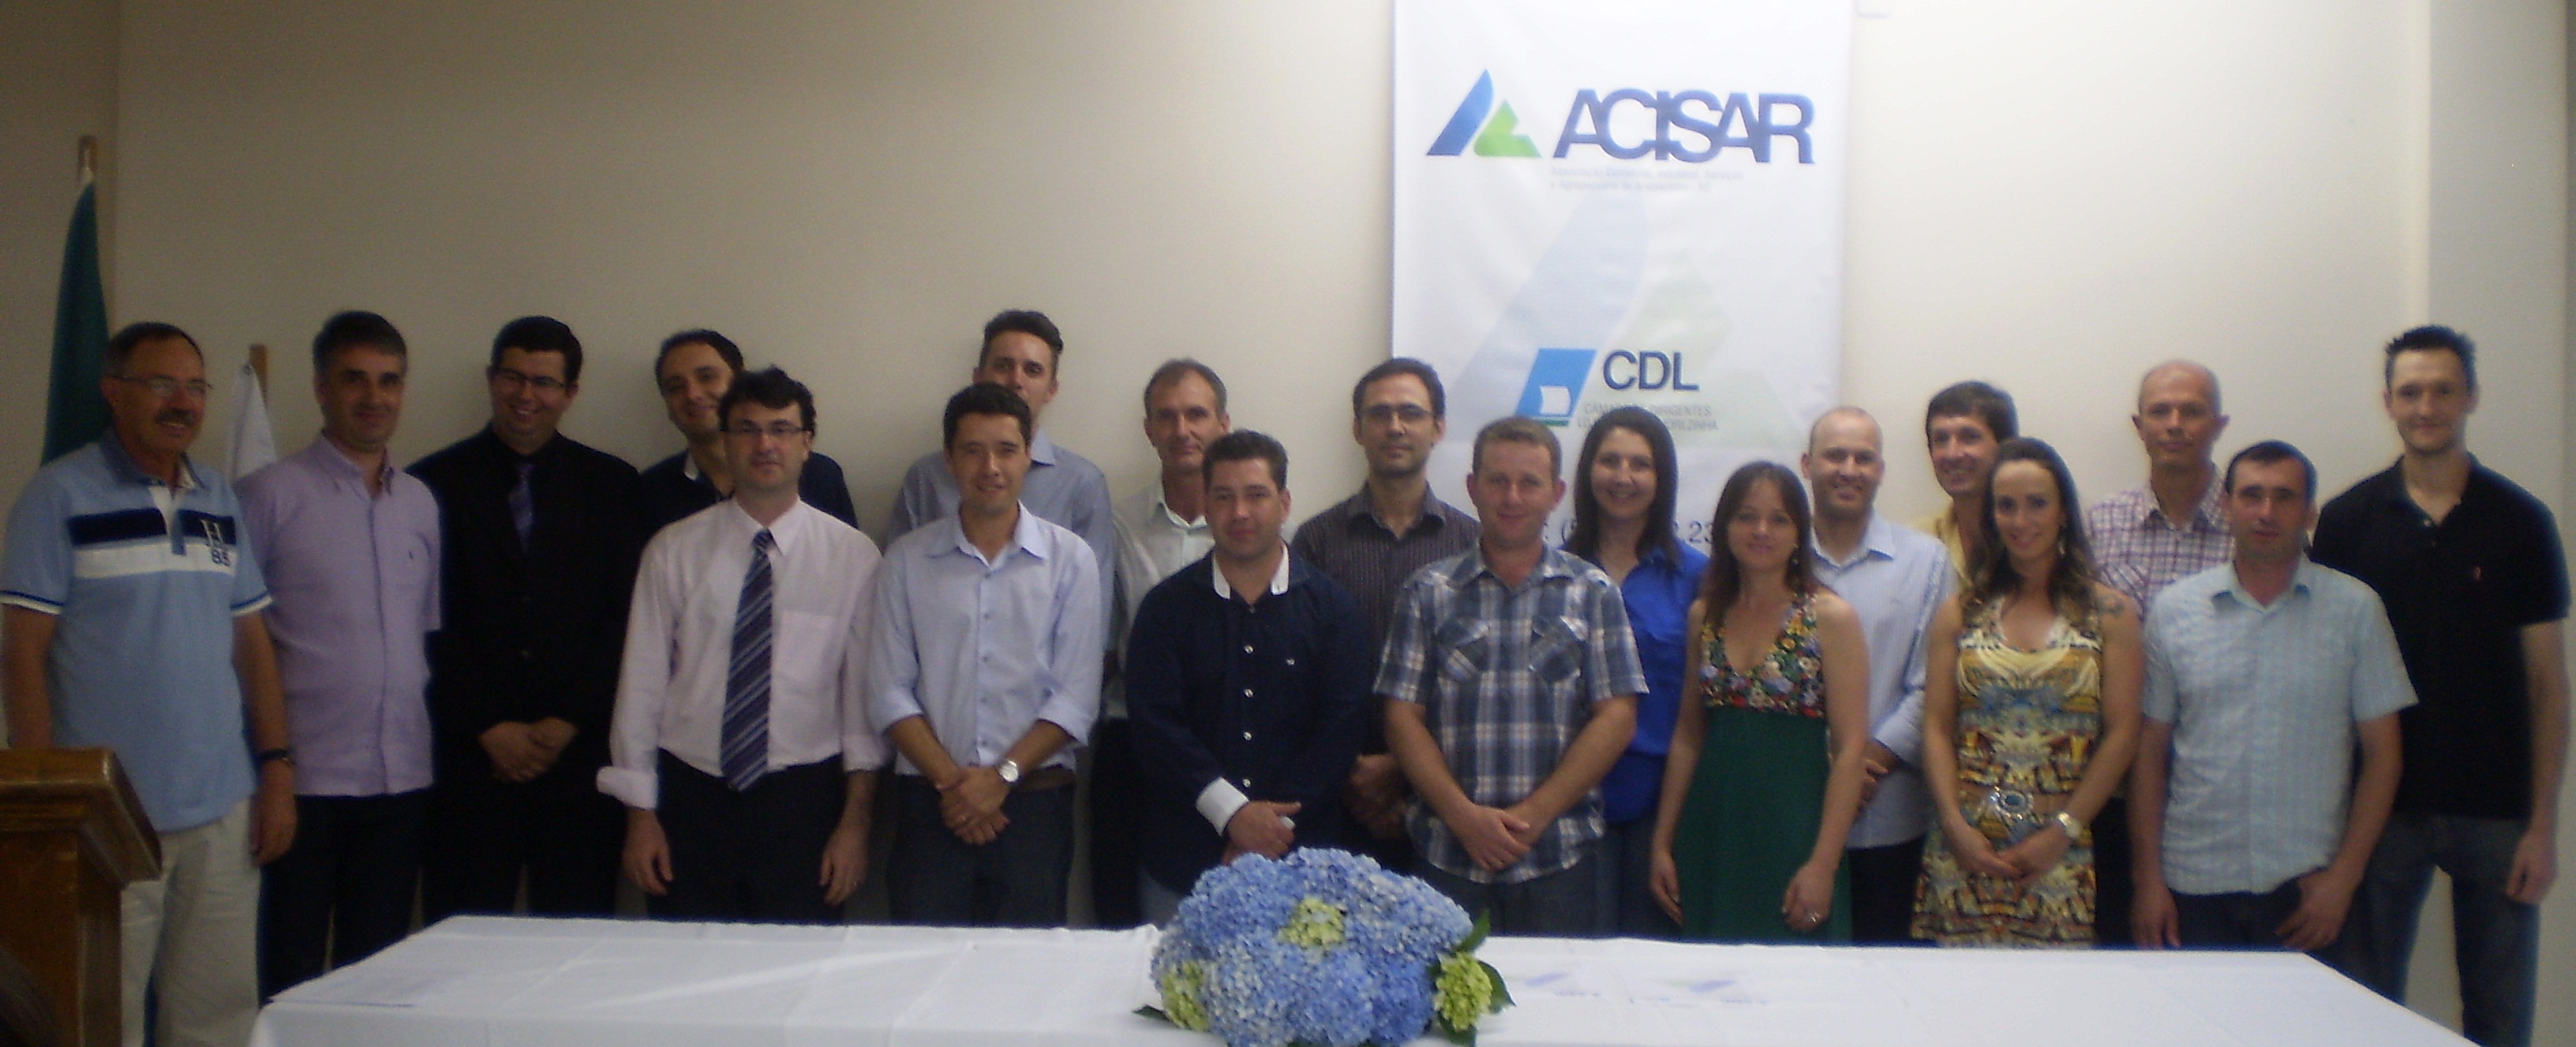 Jantar de Confraternização e Posse da Nova Diretoria 2014/2015 da Acisar/CDL.